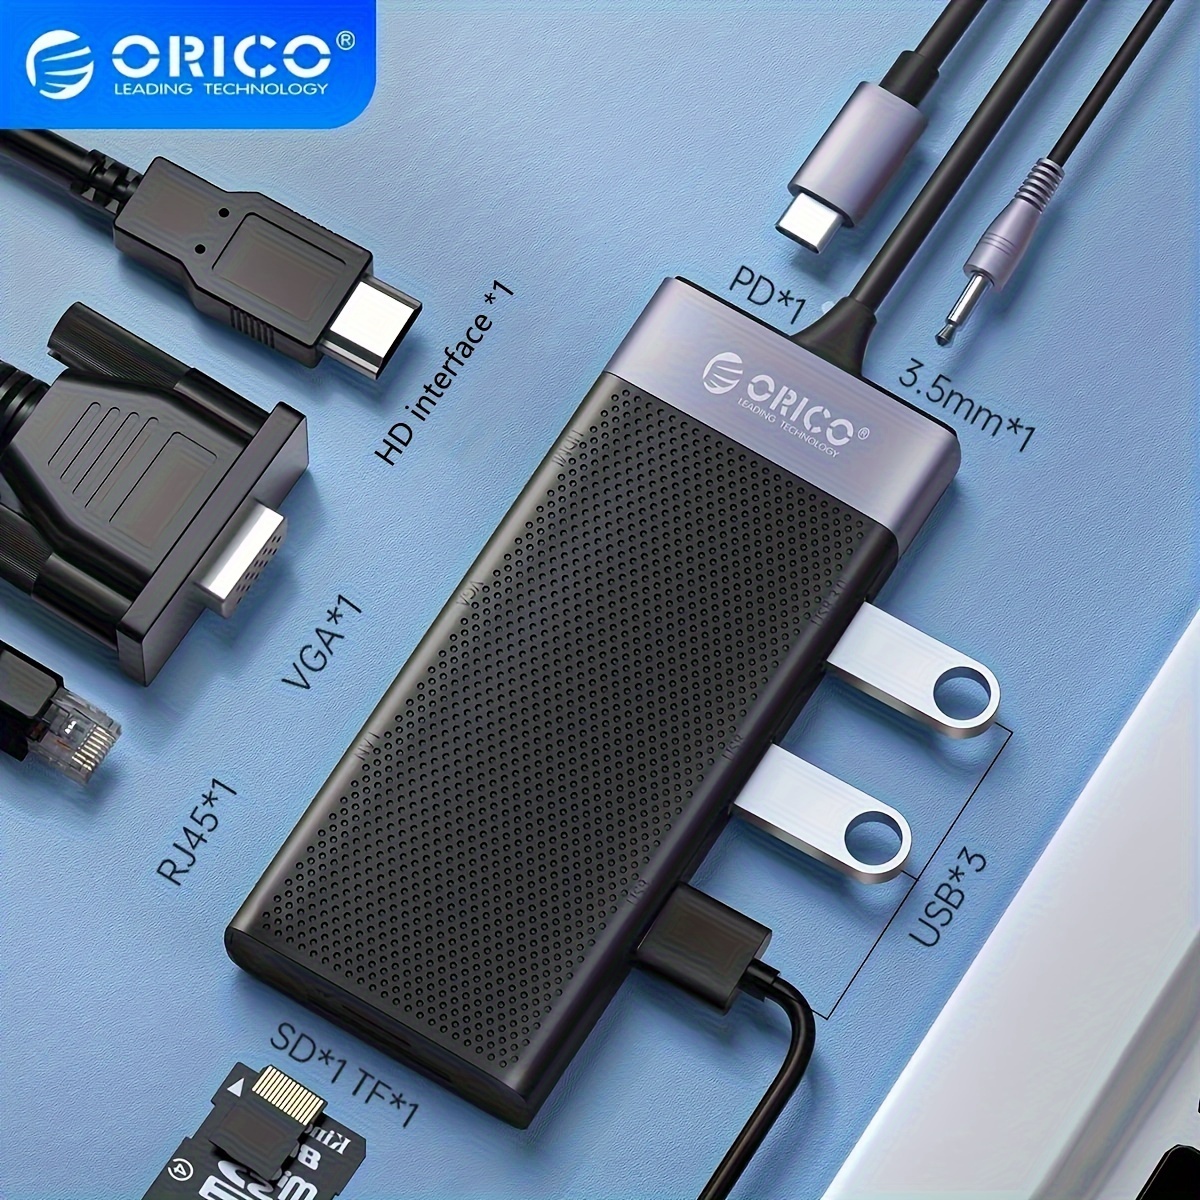 HUB USB Tipo C a HDMI + RJ45 + 3xUSB 3.0 + lector tarjetas + jack + PD